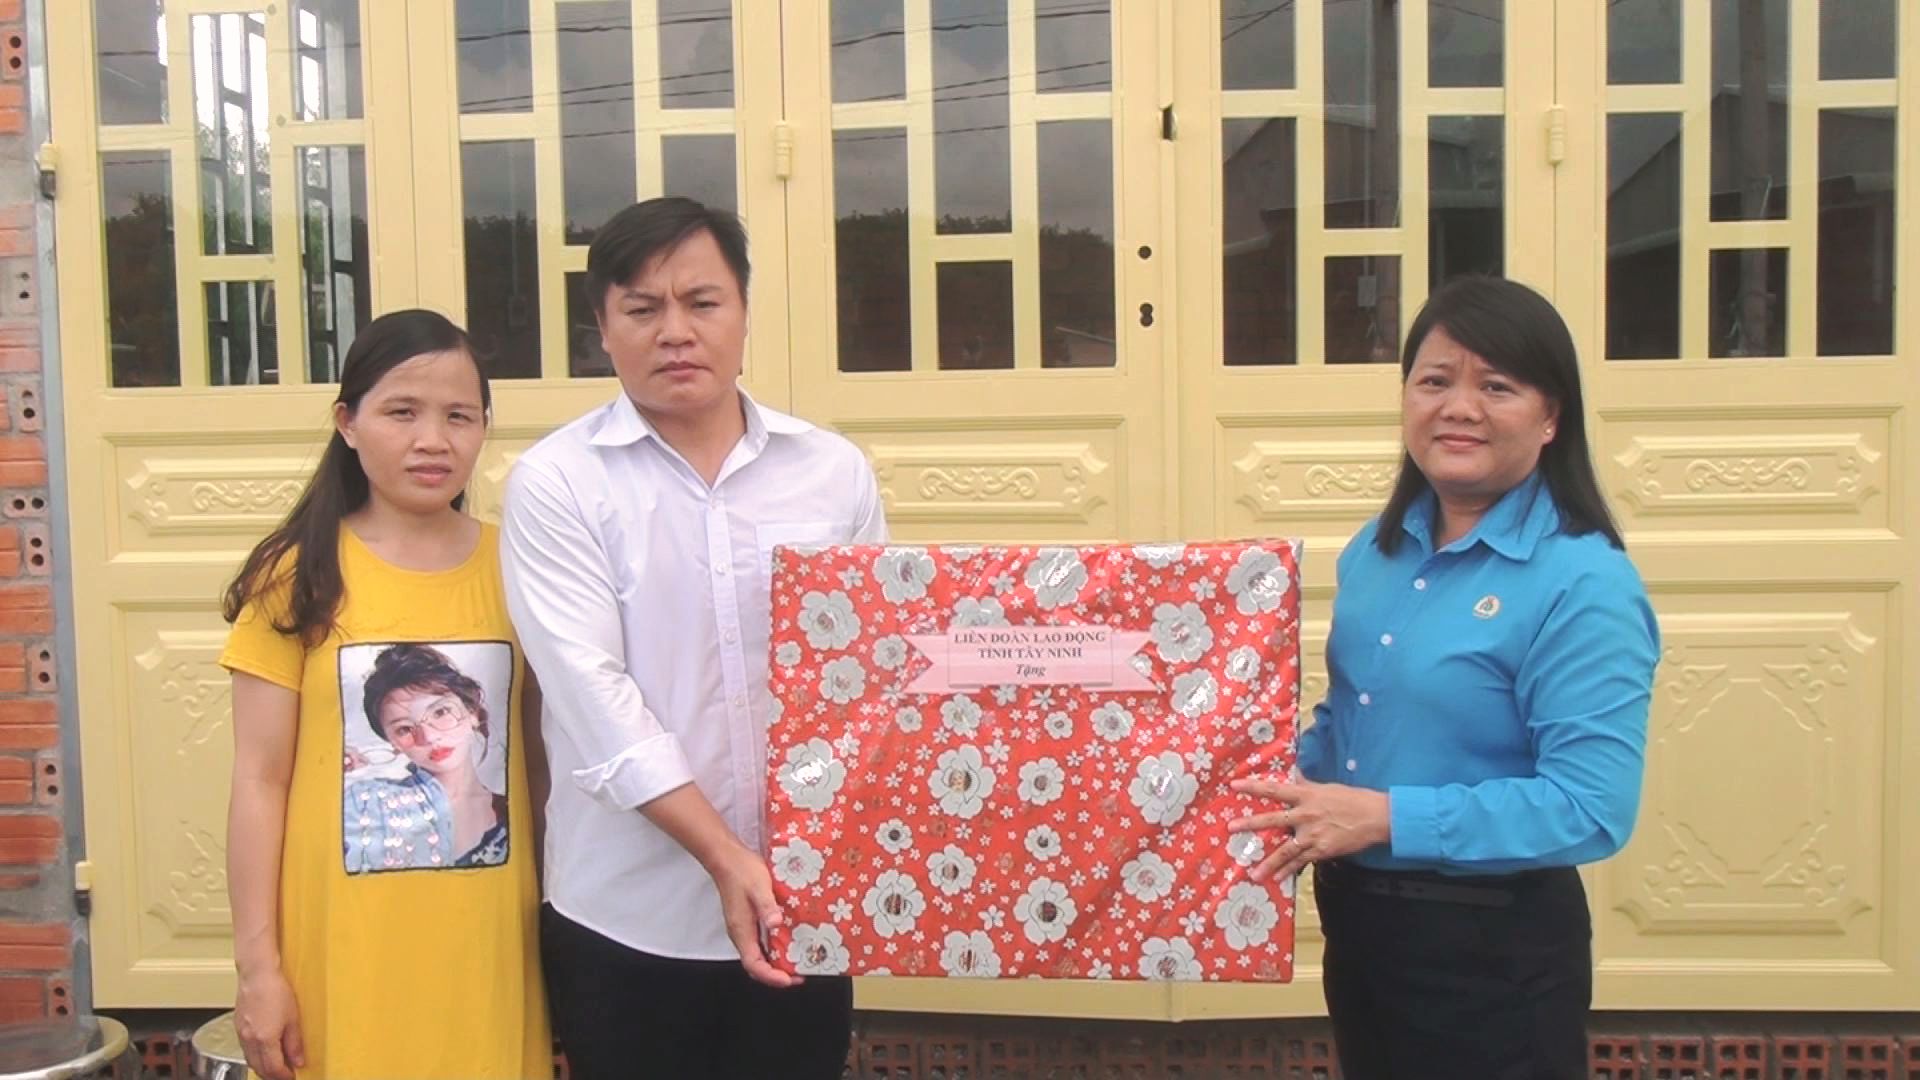 Liên đoàn Lao động tỉnh Tây Ninh: Trao nhà Mái ấm công đoàn tại huyện Dương Minh Châu